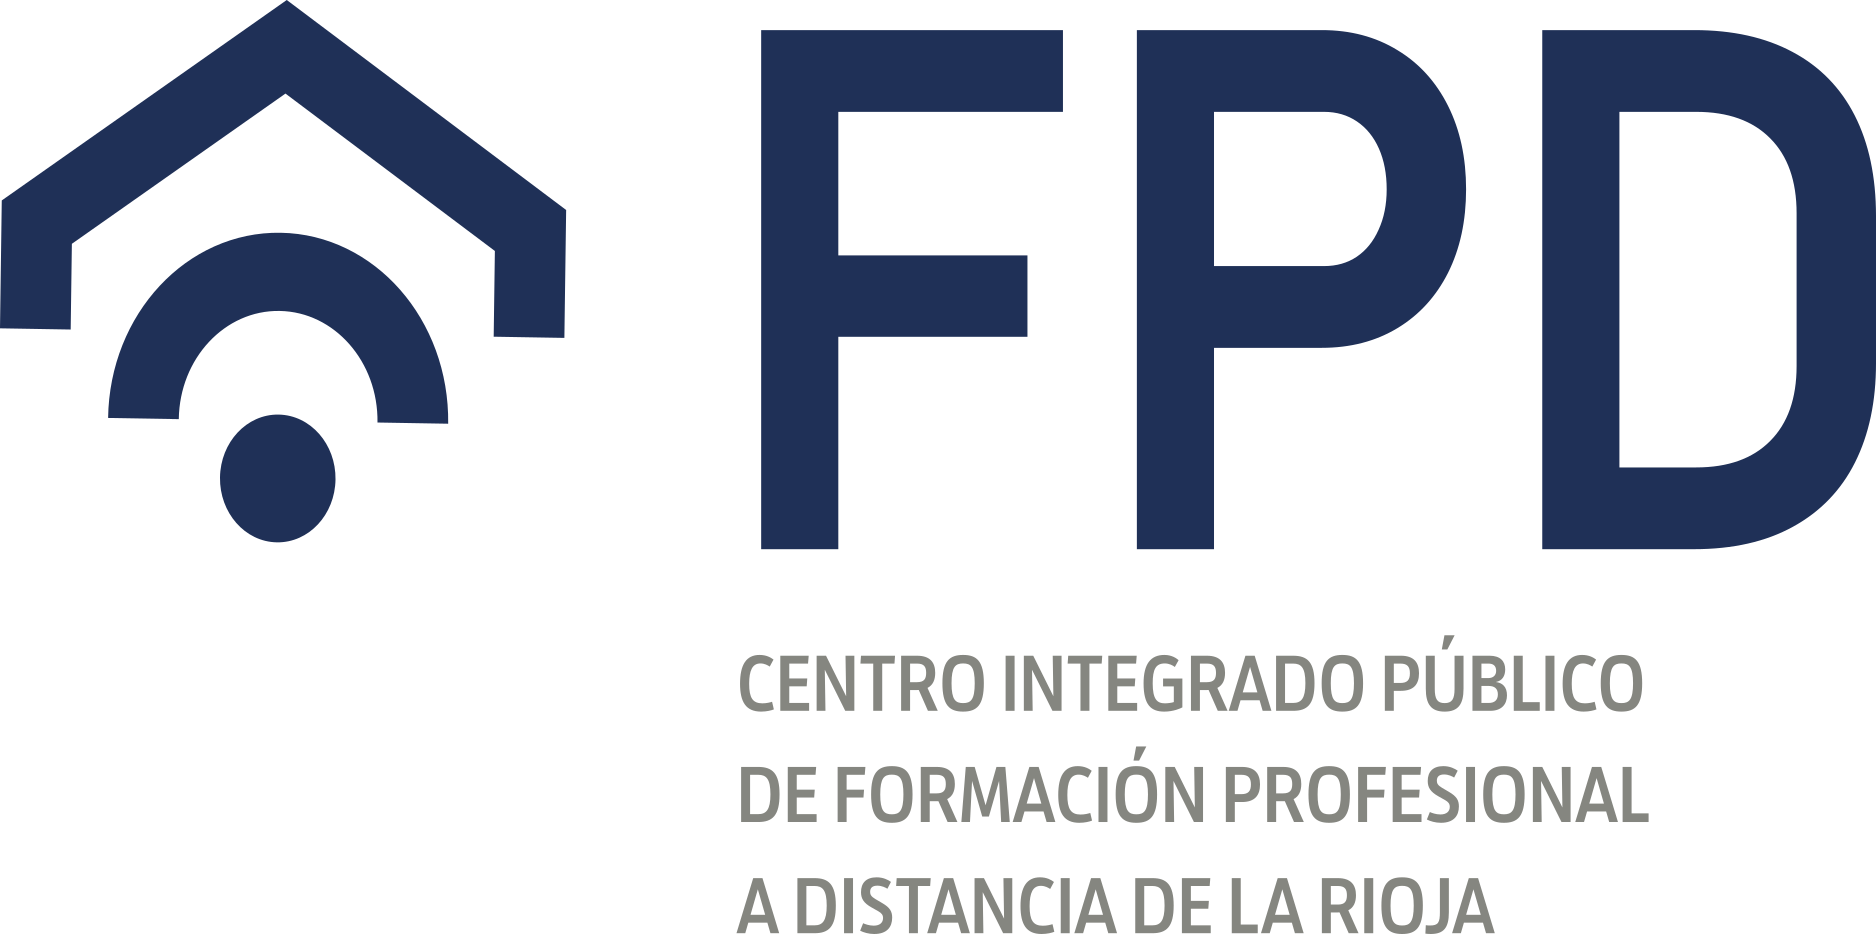 Centro Integrado Público de Formación Profesional a Distancia de La Rioja